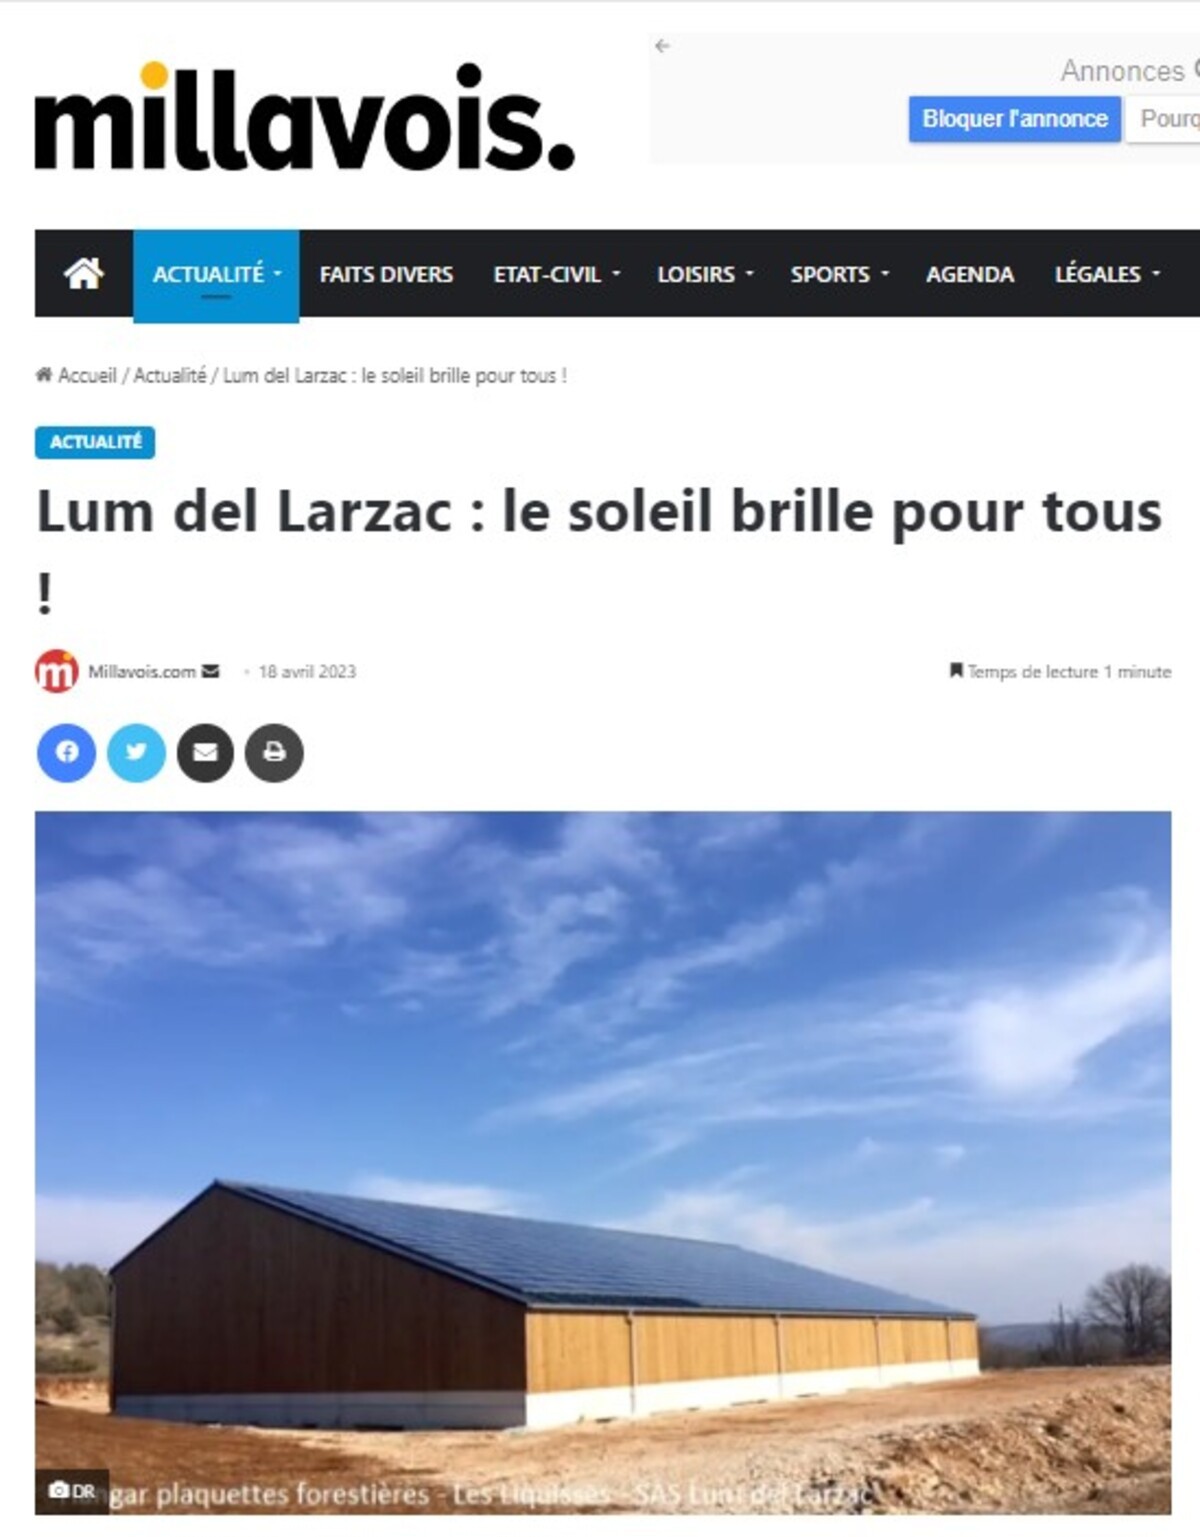 Lum del Larzac sur Millavois.com